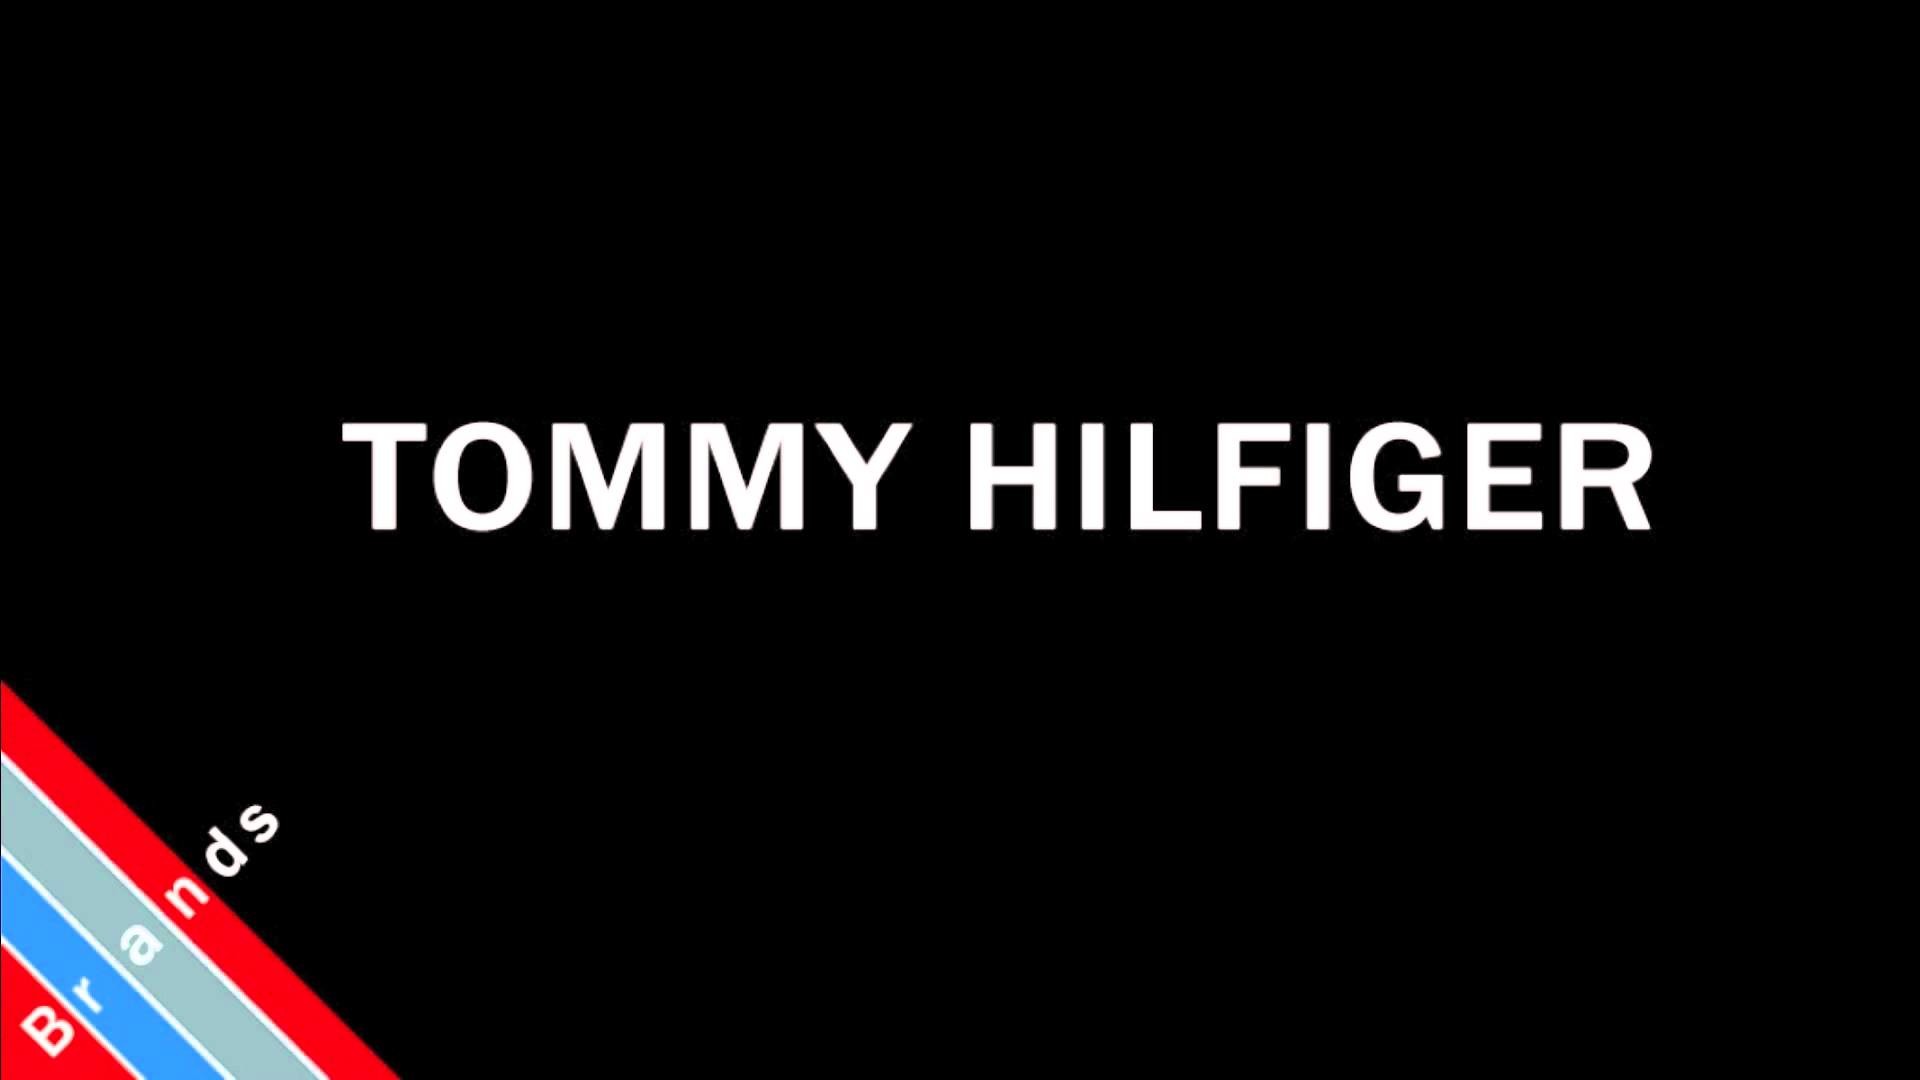 Tommy Hilfiger Wallpaper Image